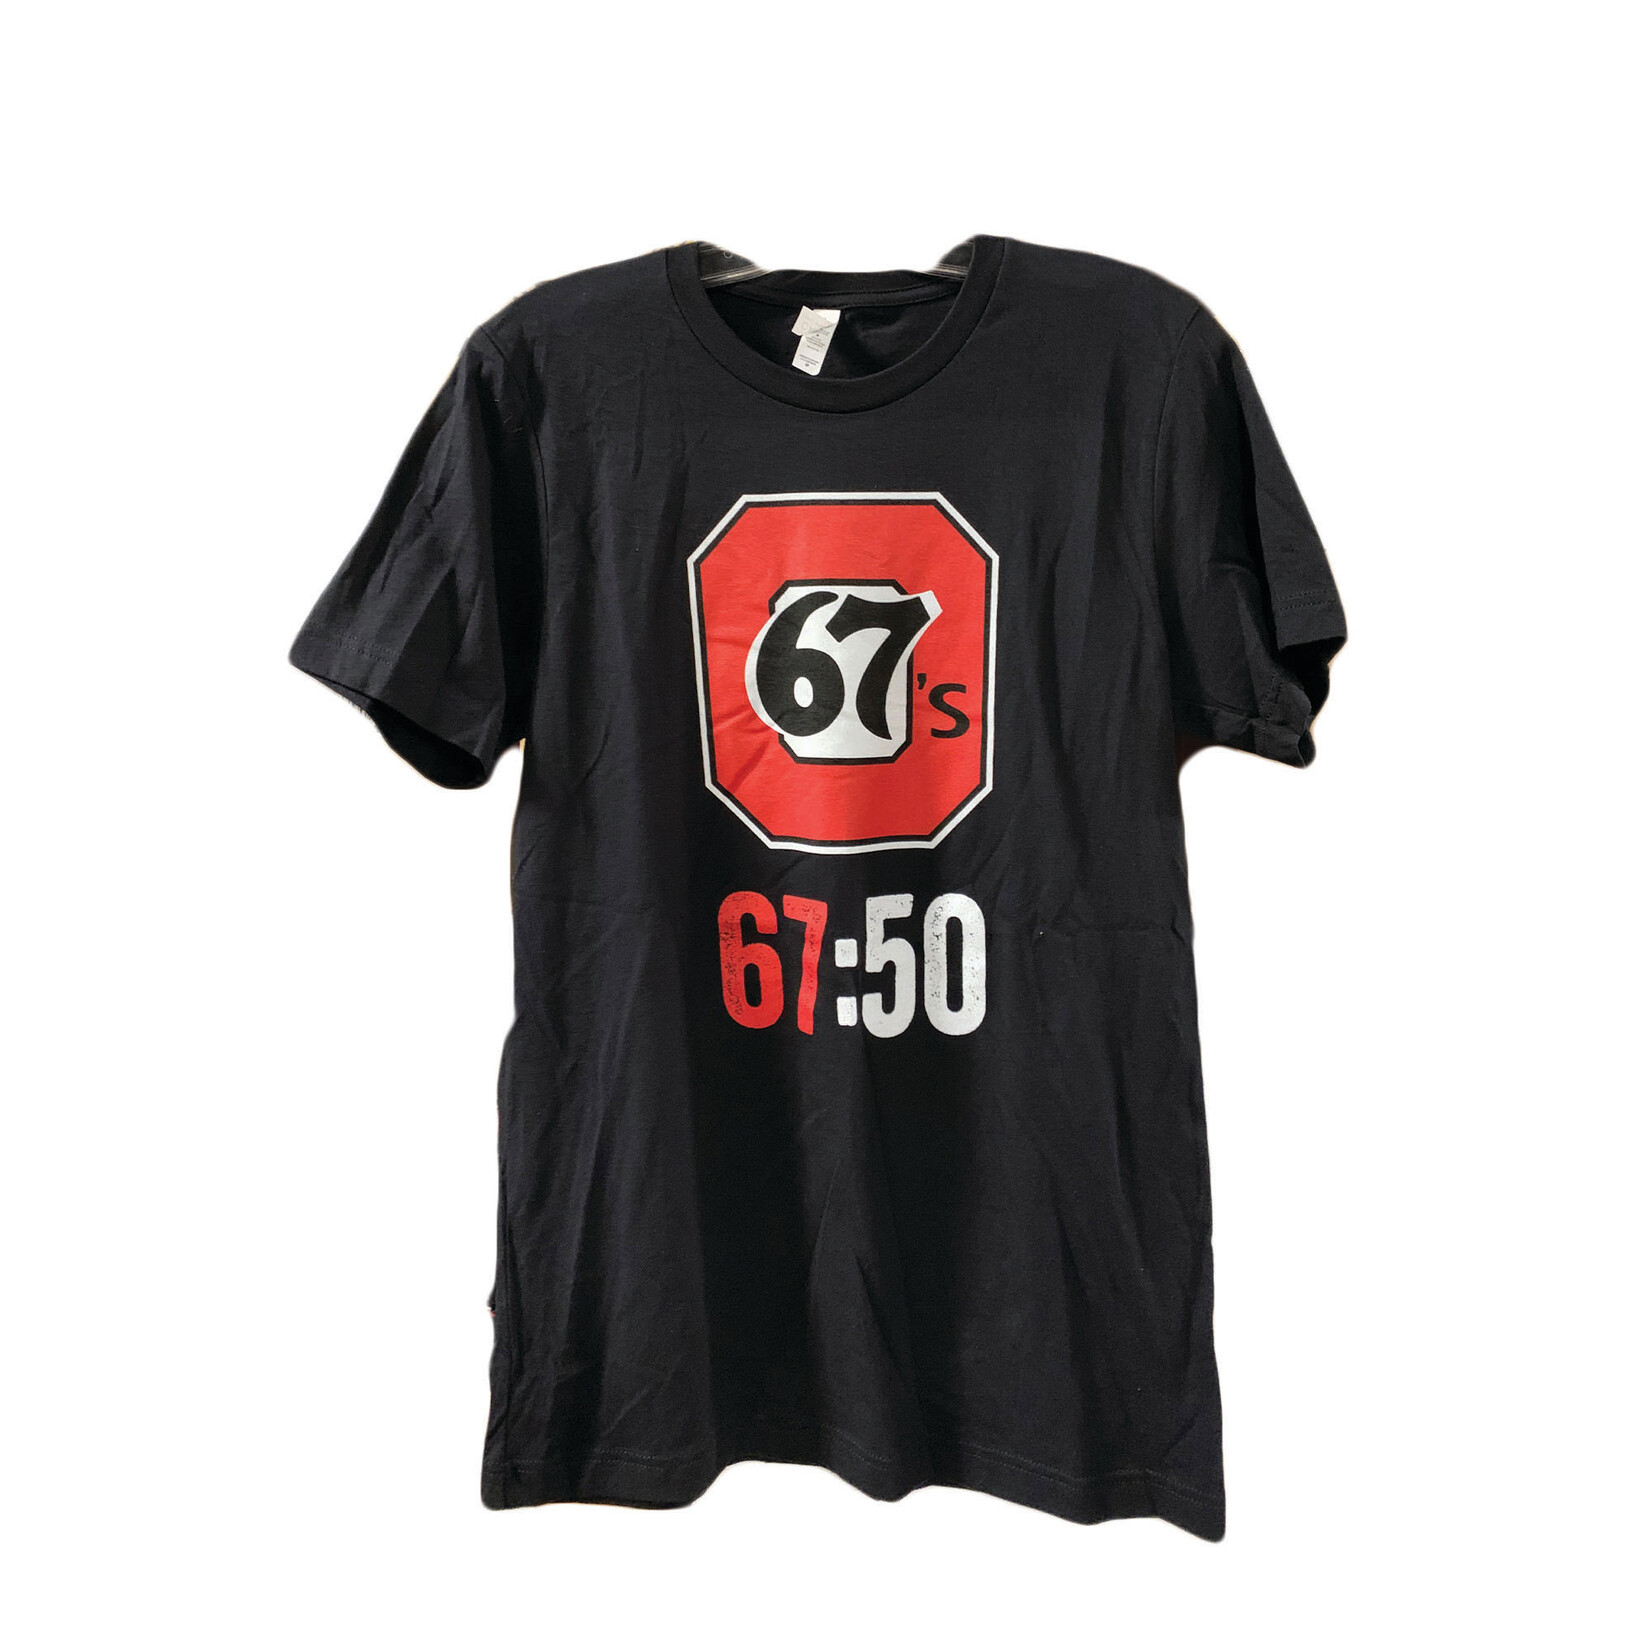 OTTAWA 67's 67's Anniversary Black Tee